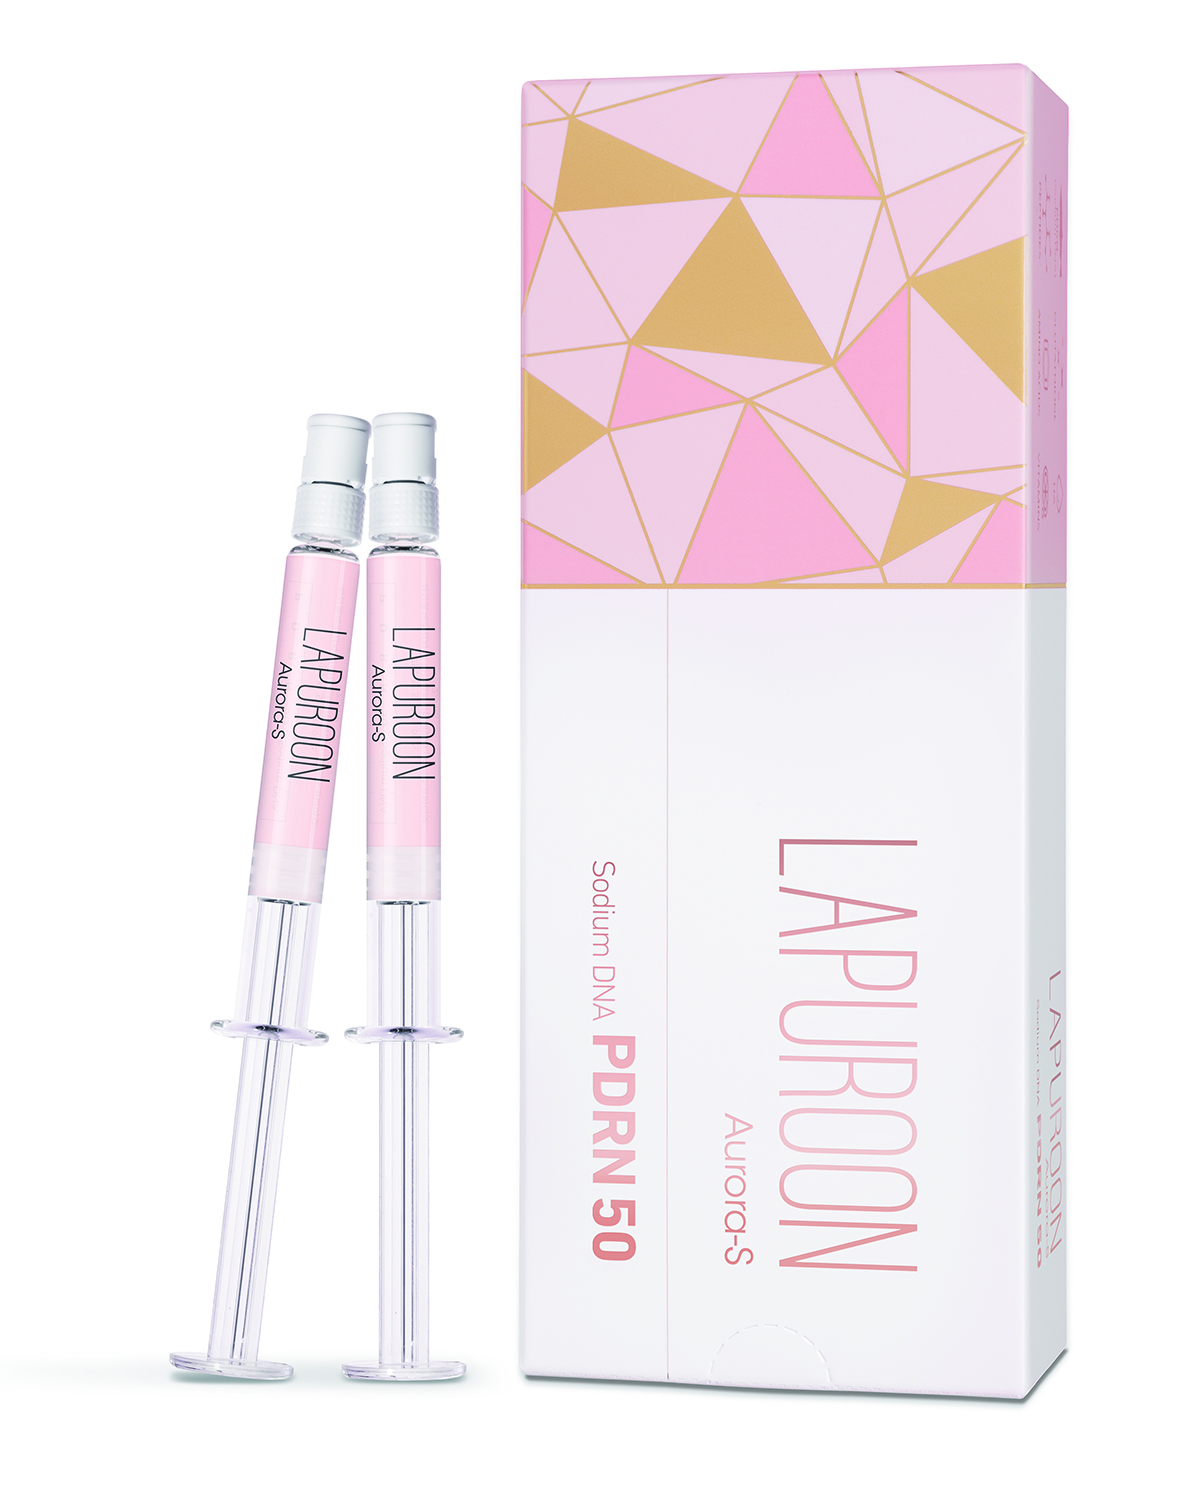 LAPUROON_Aurora-S_Box+Syringe cut B